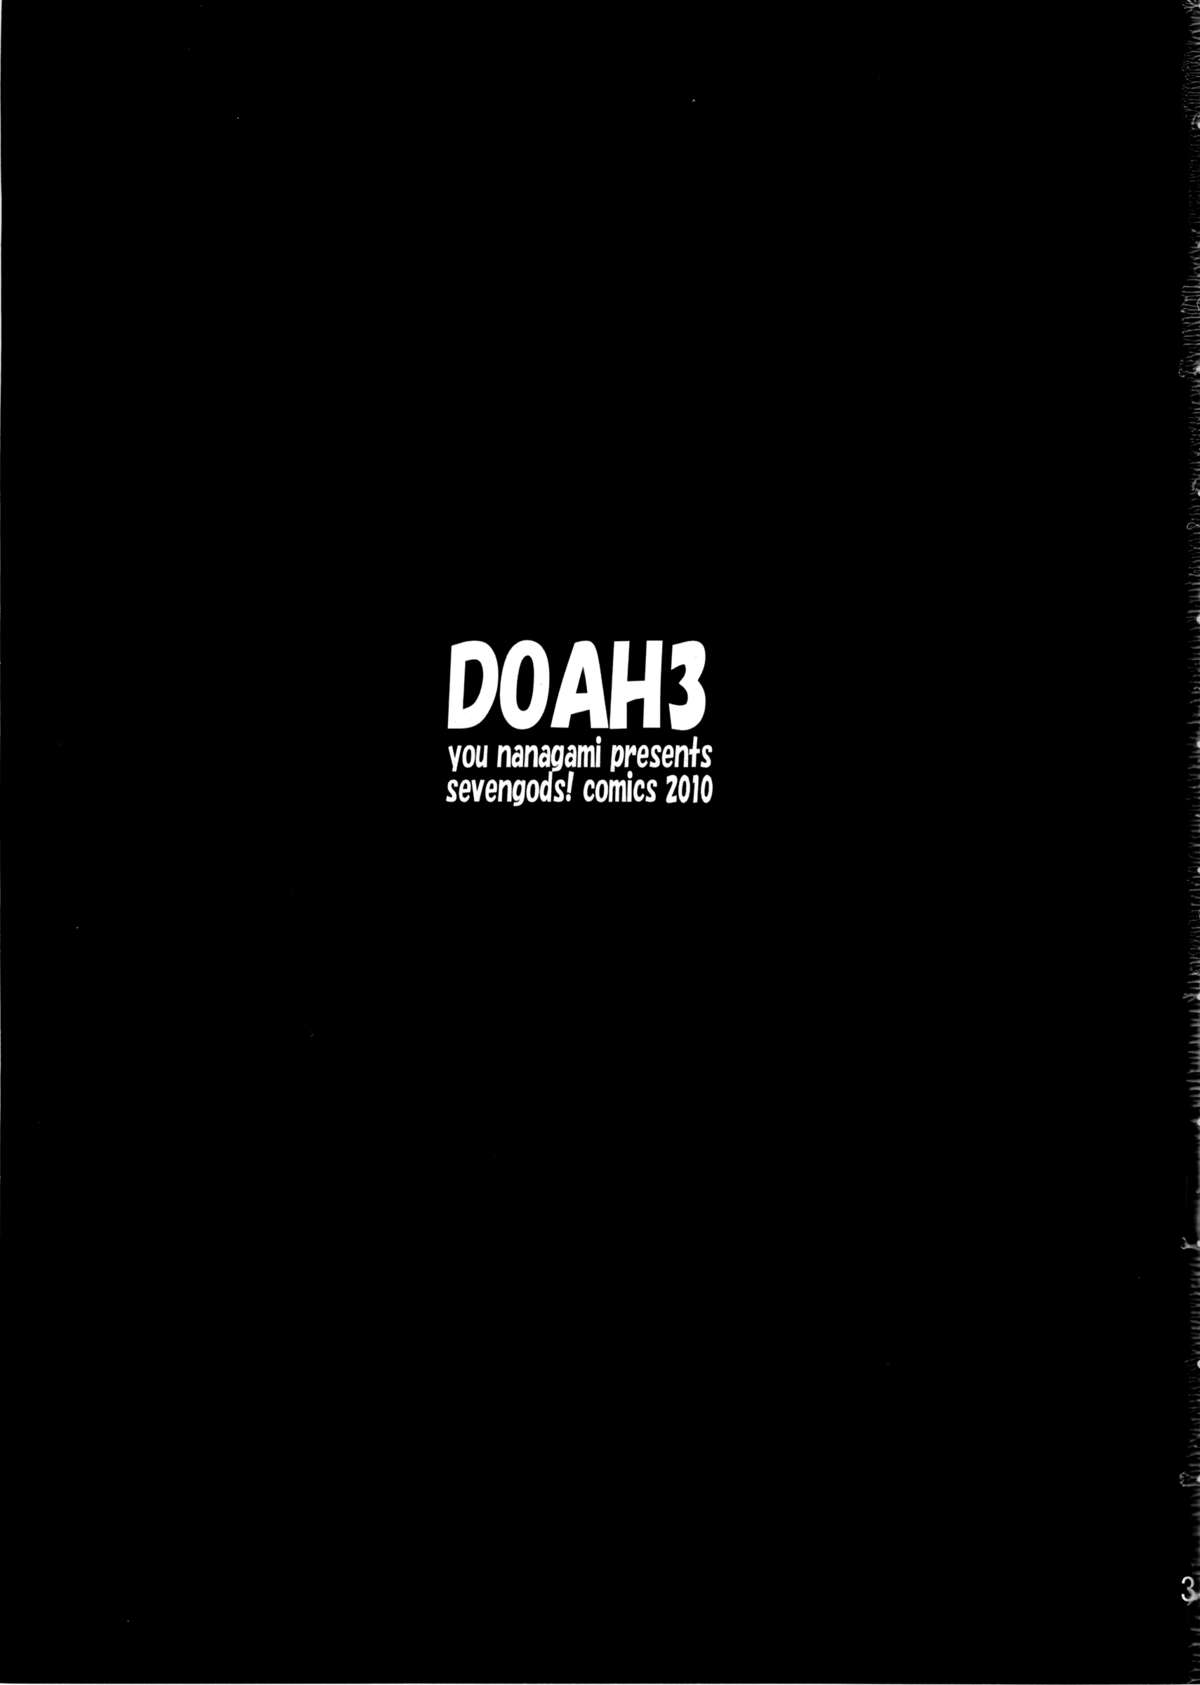 DOAH 3